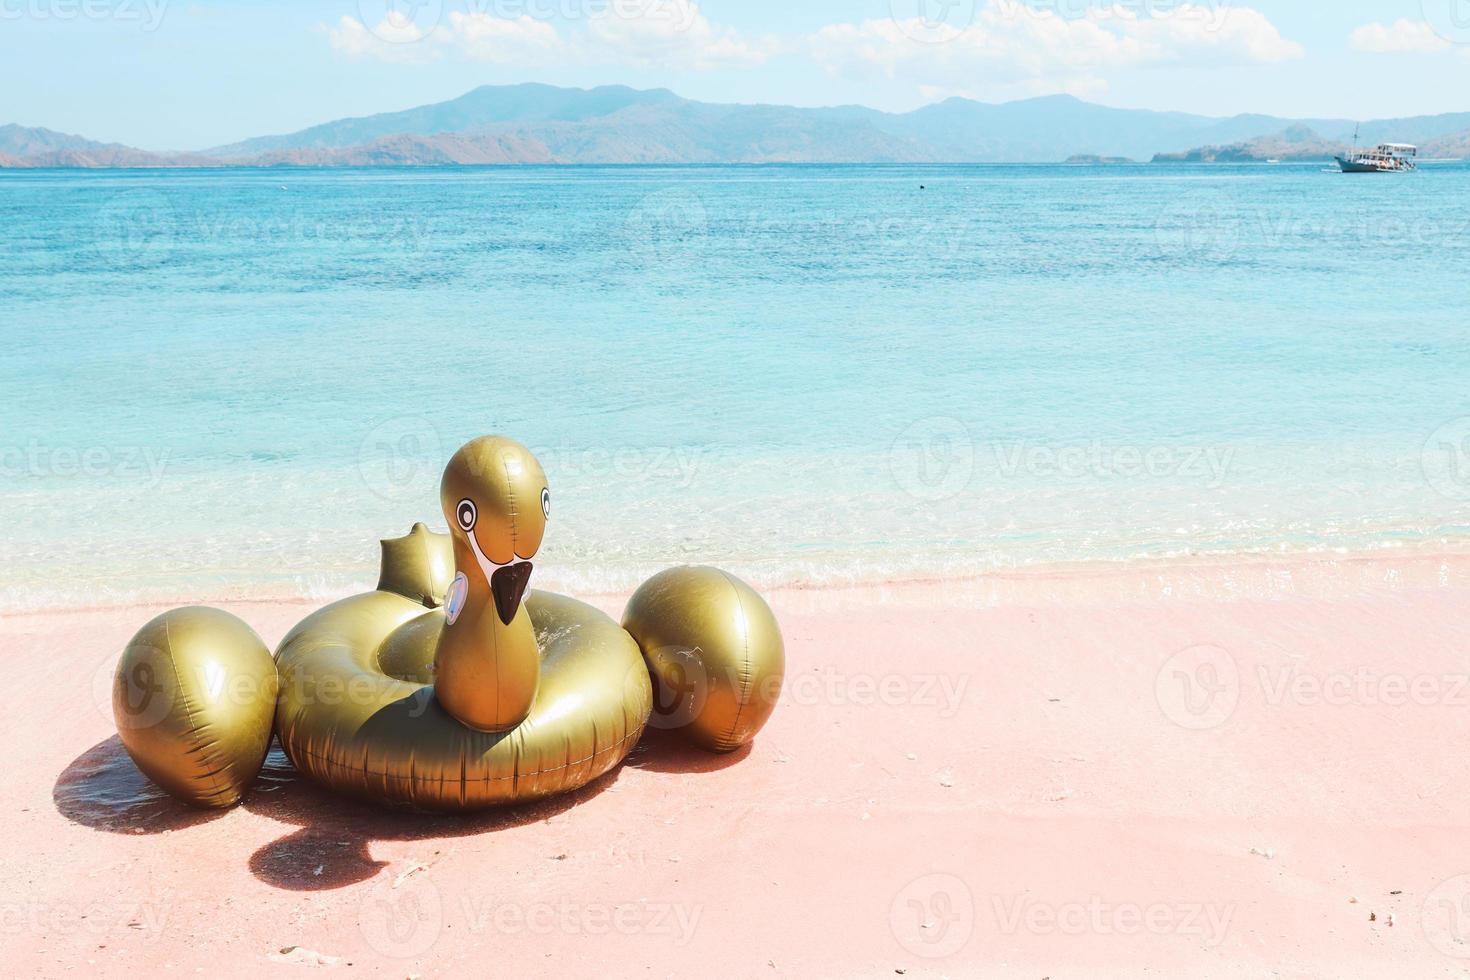 cisne inflable en la playa de arena rosa foto